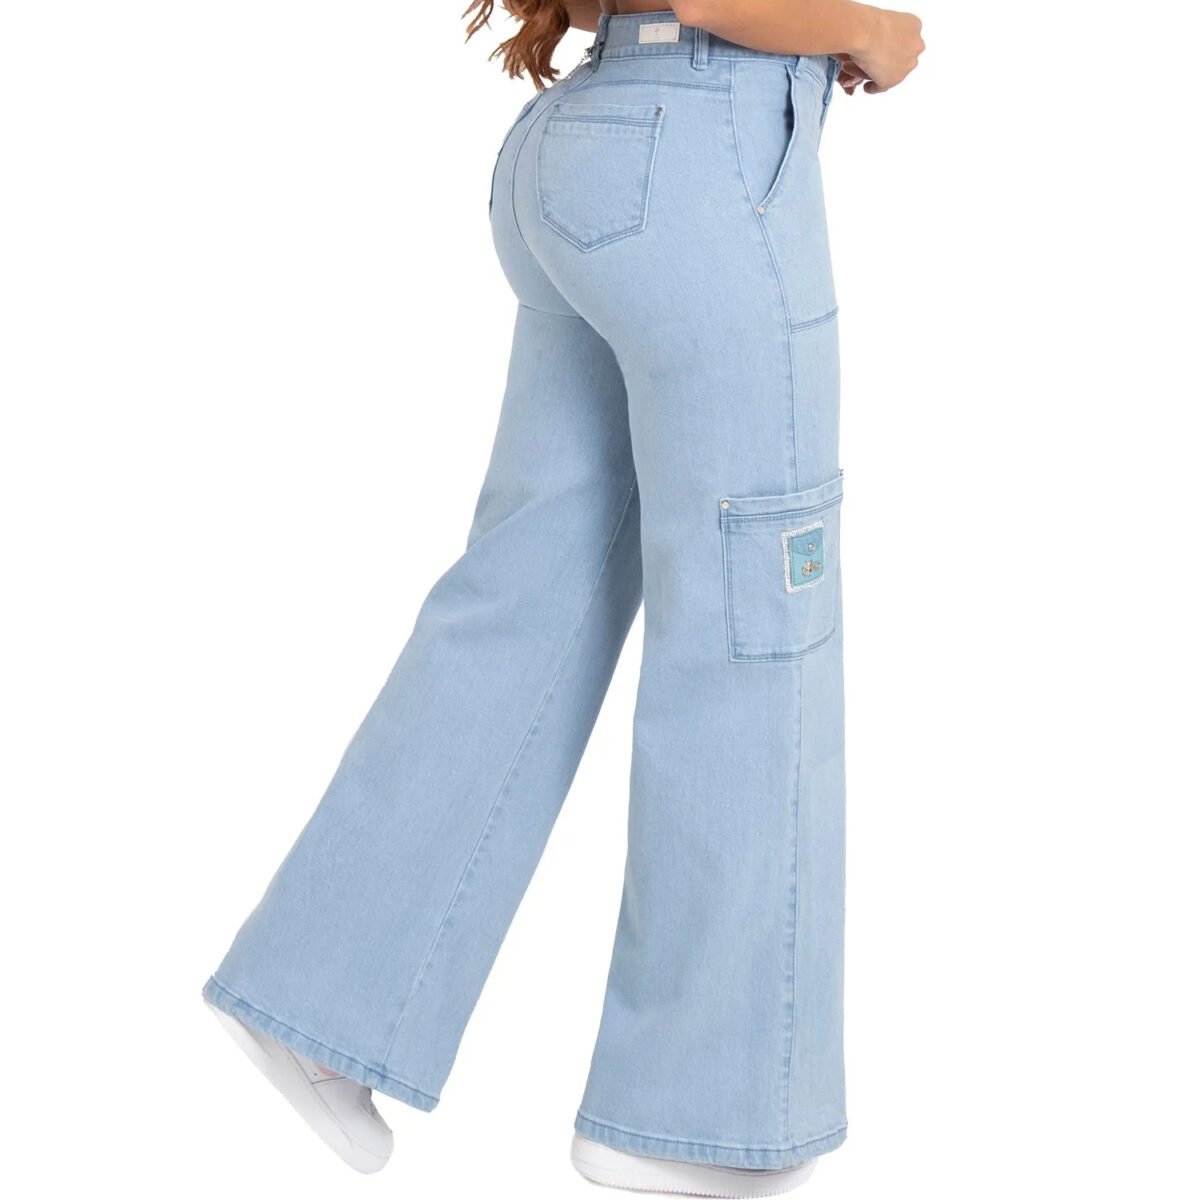 Los jeans colombianos cargo levanta gluteos incorporan la practicidad de los bolsillos cargo con la moda y el estilo contemporáneo.